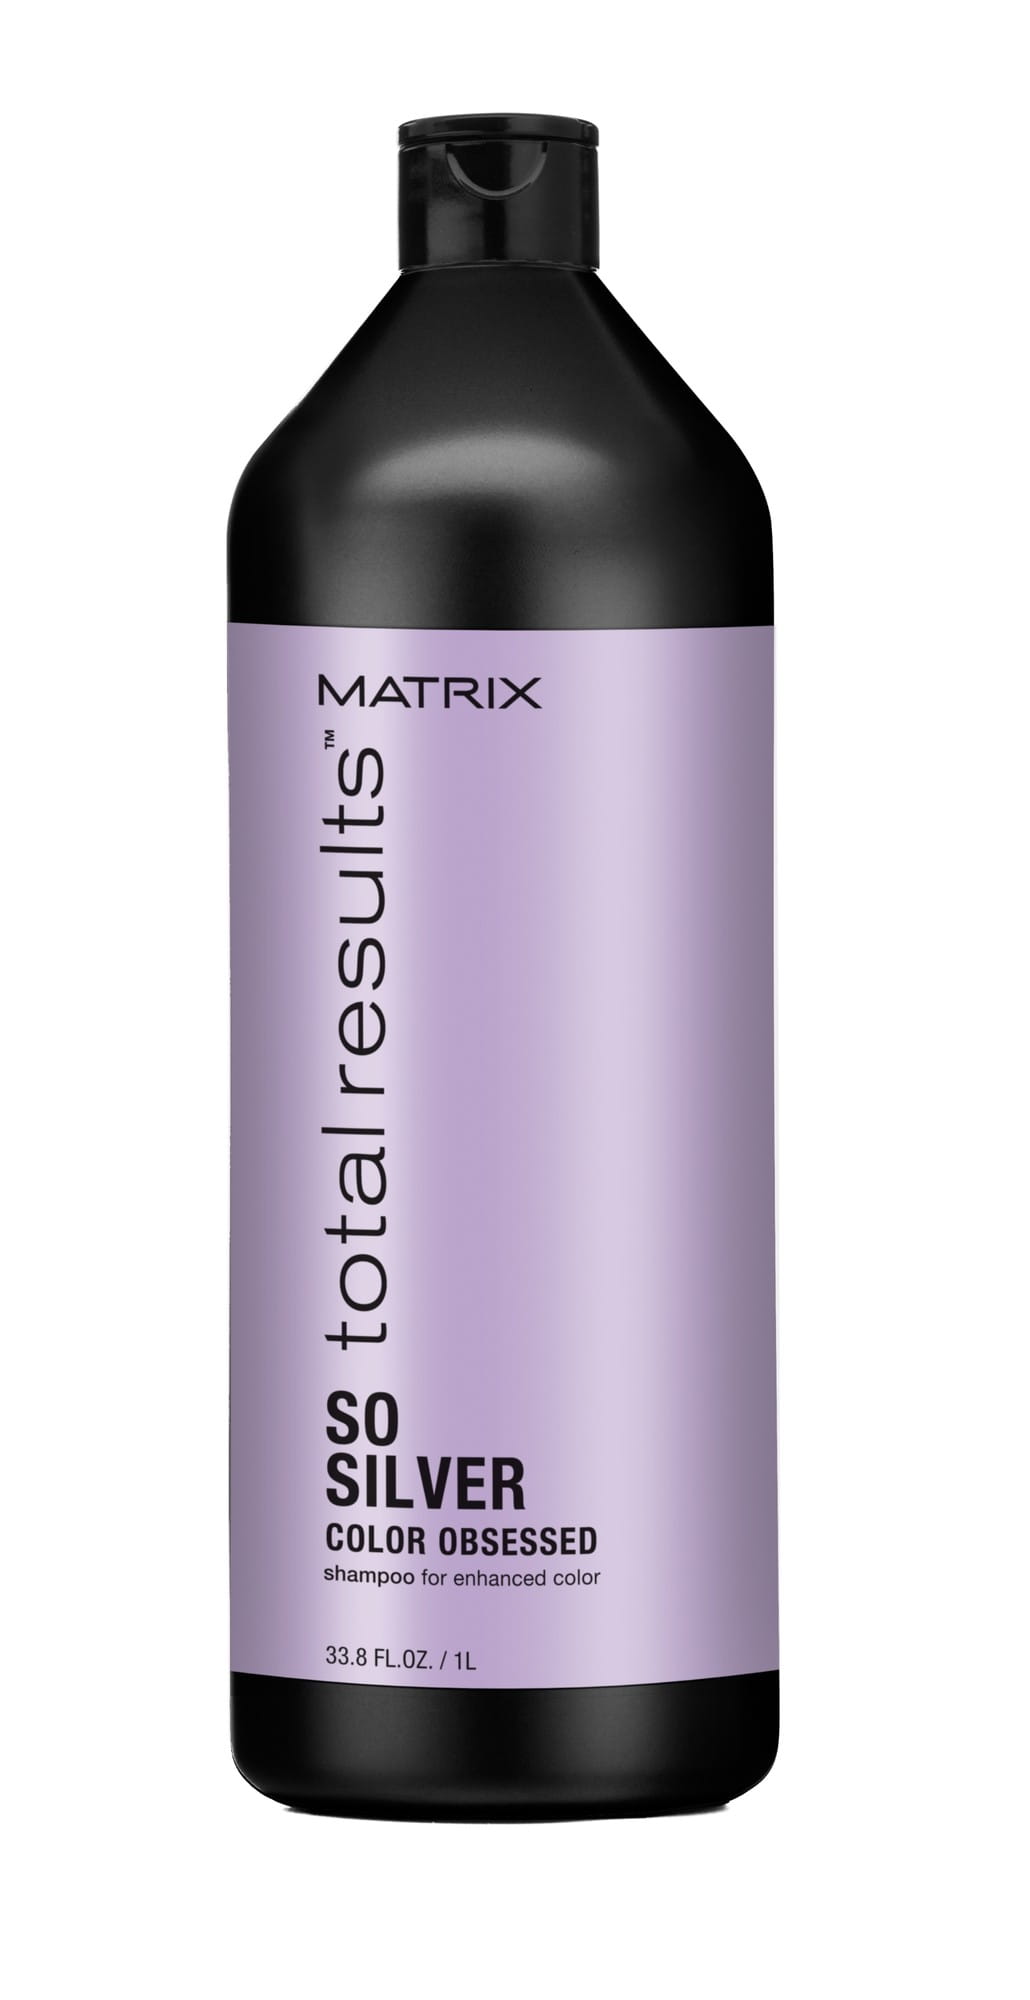 matrix fioletowy szampon cena